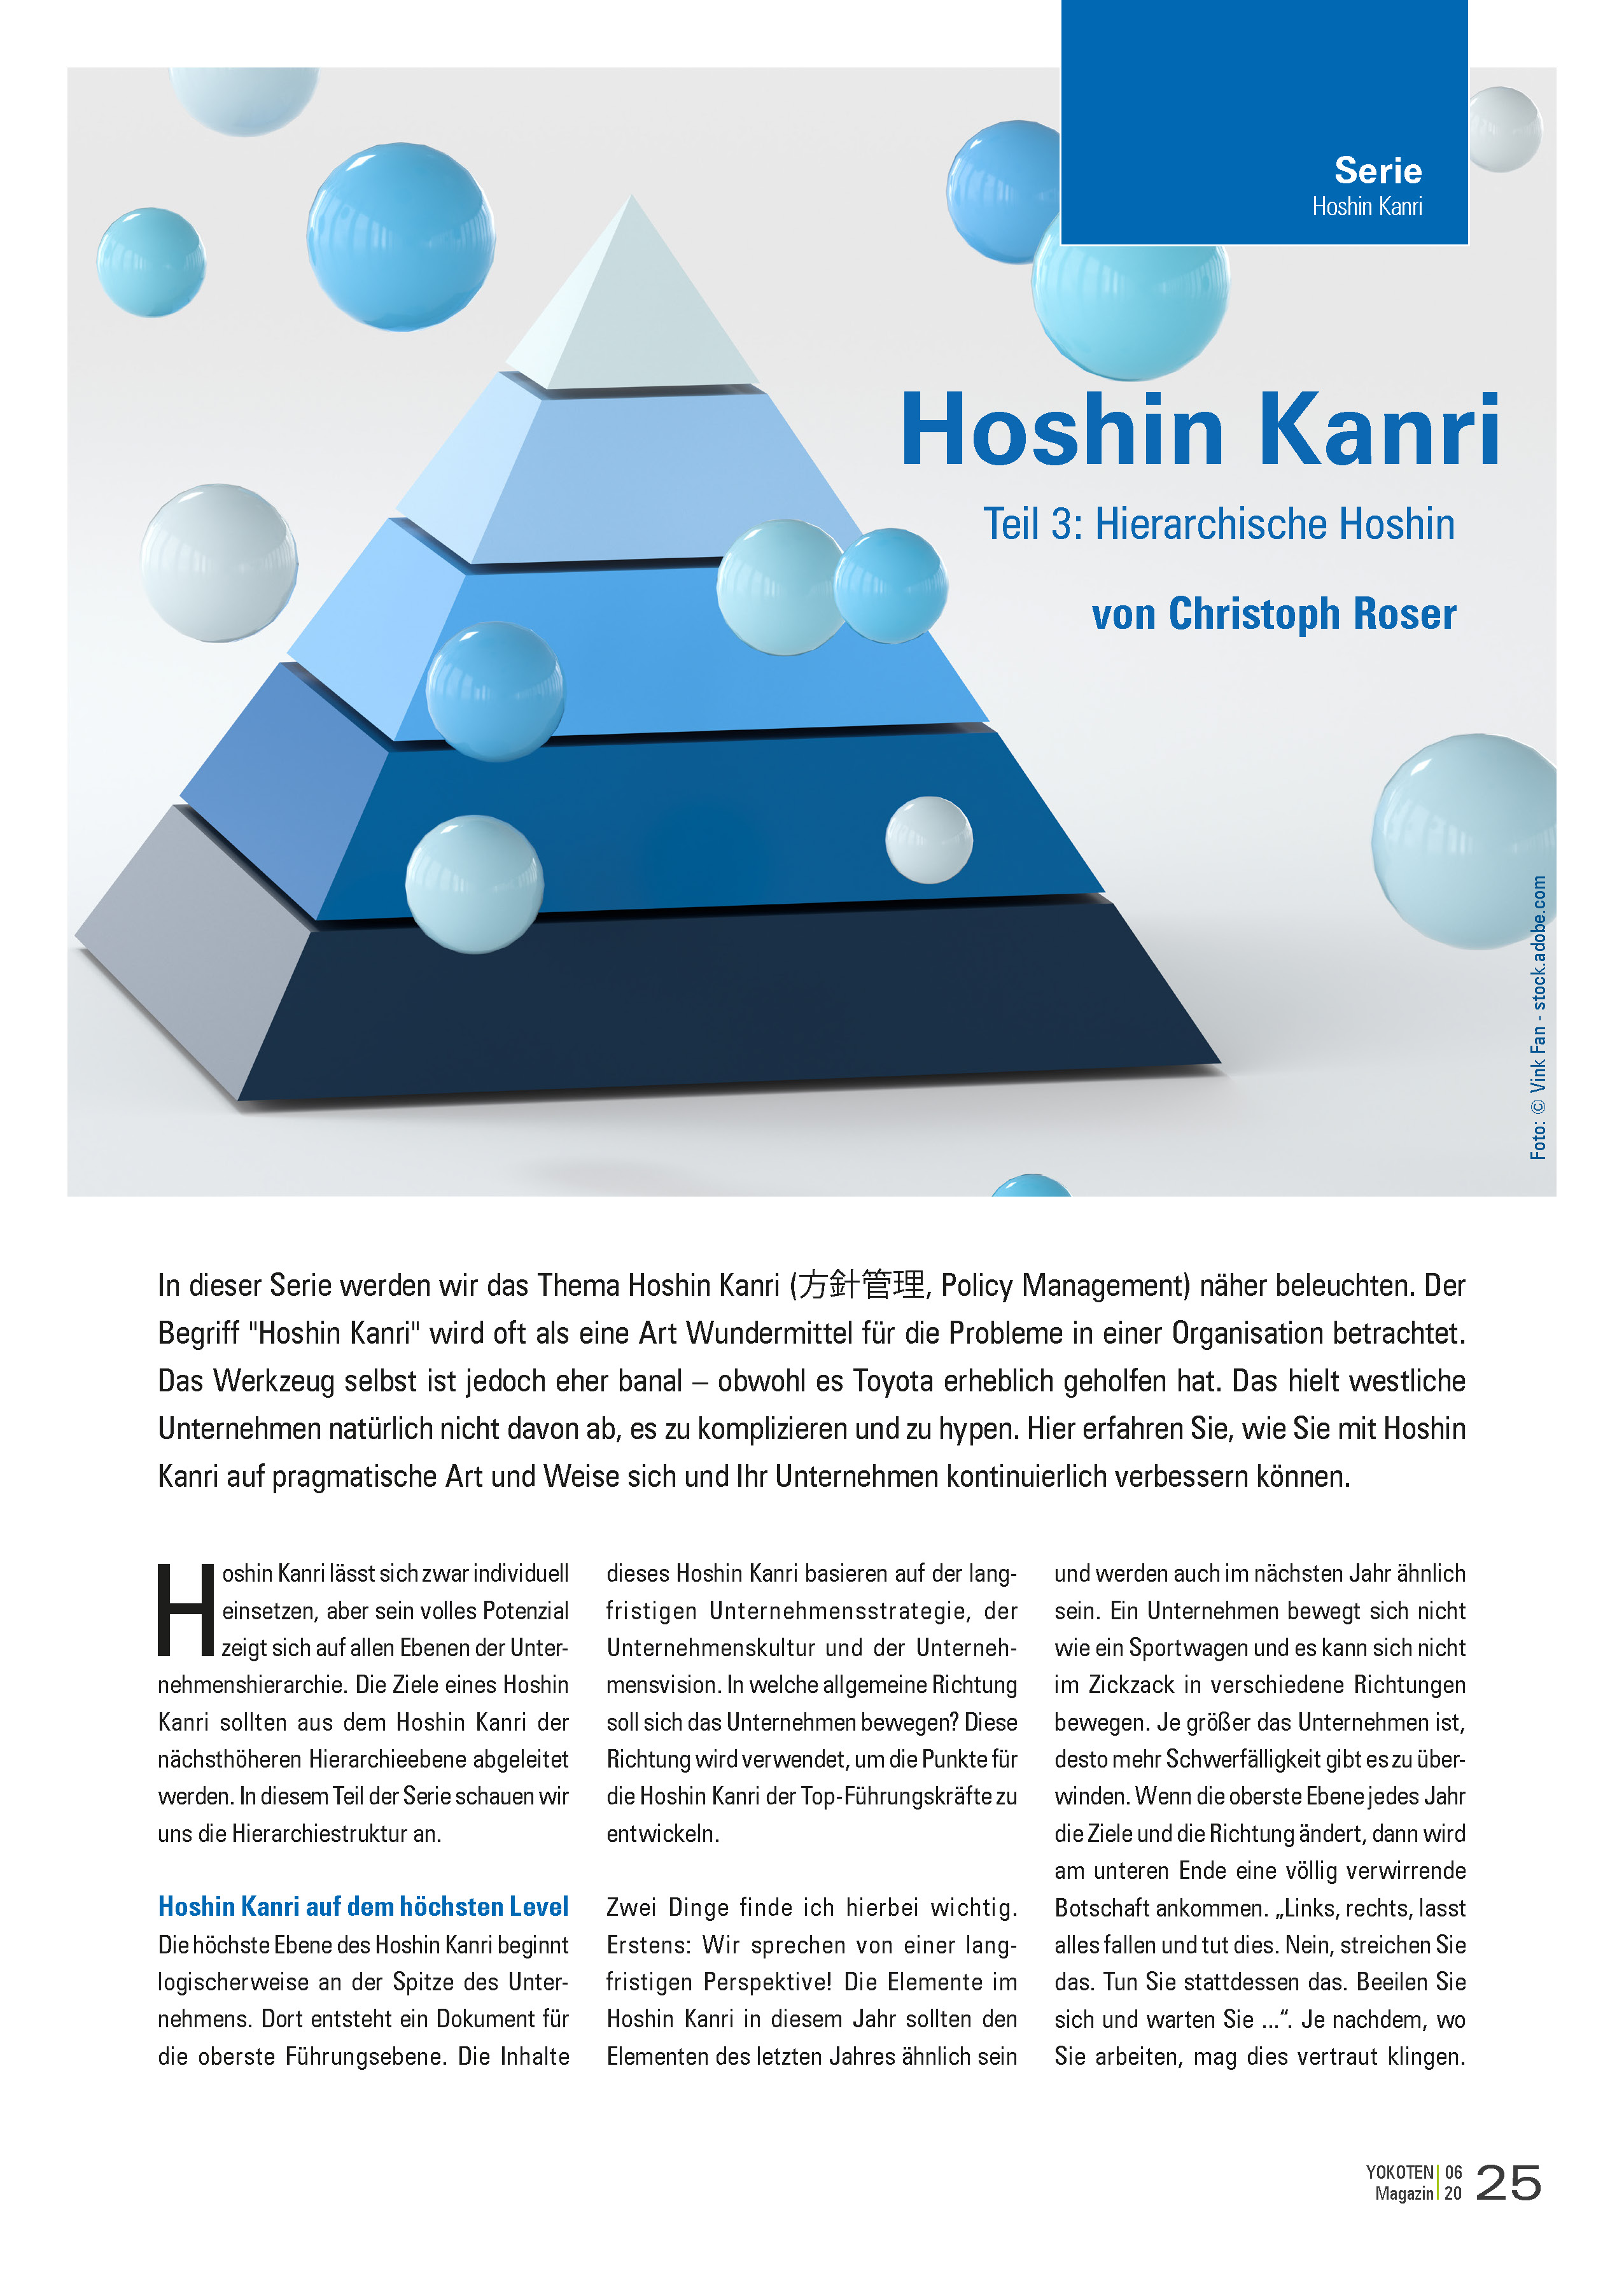 Hoshin Kanri - Artikel aus Fachmagazin YOKOTEN 2020-06